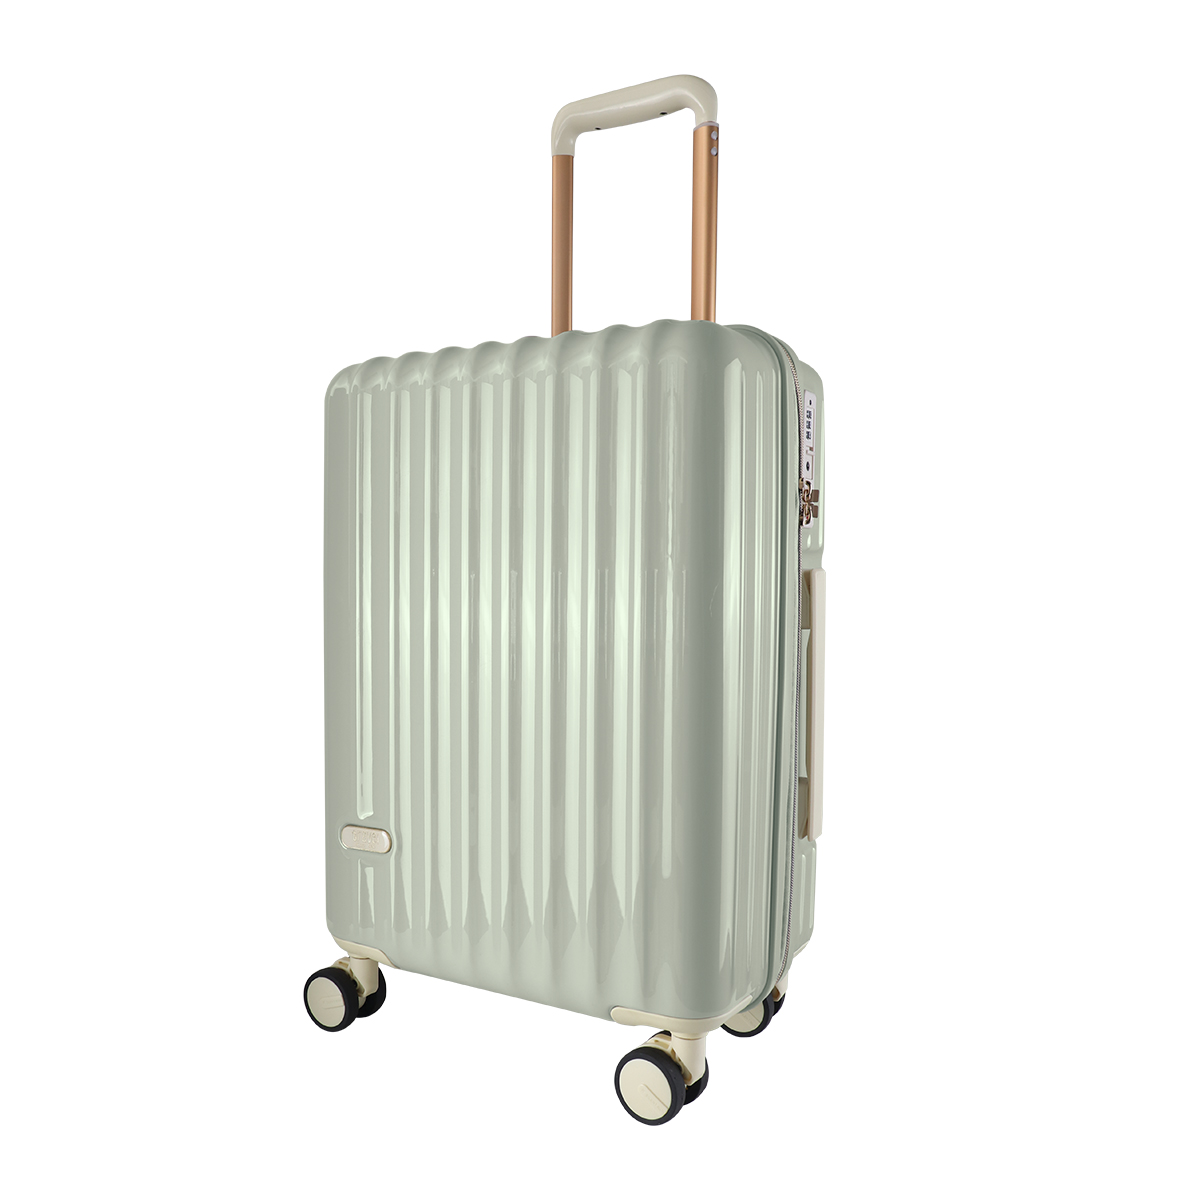 スーツケース 軽量 Sサイズ 39L 1〜2泊 機内持ち込みサイズ TSAロック付き おしゃれ かわ...